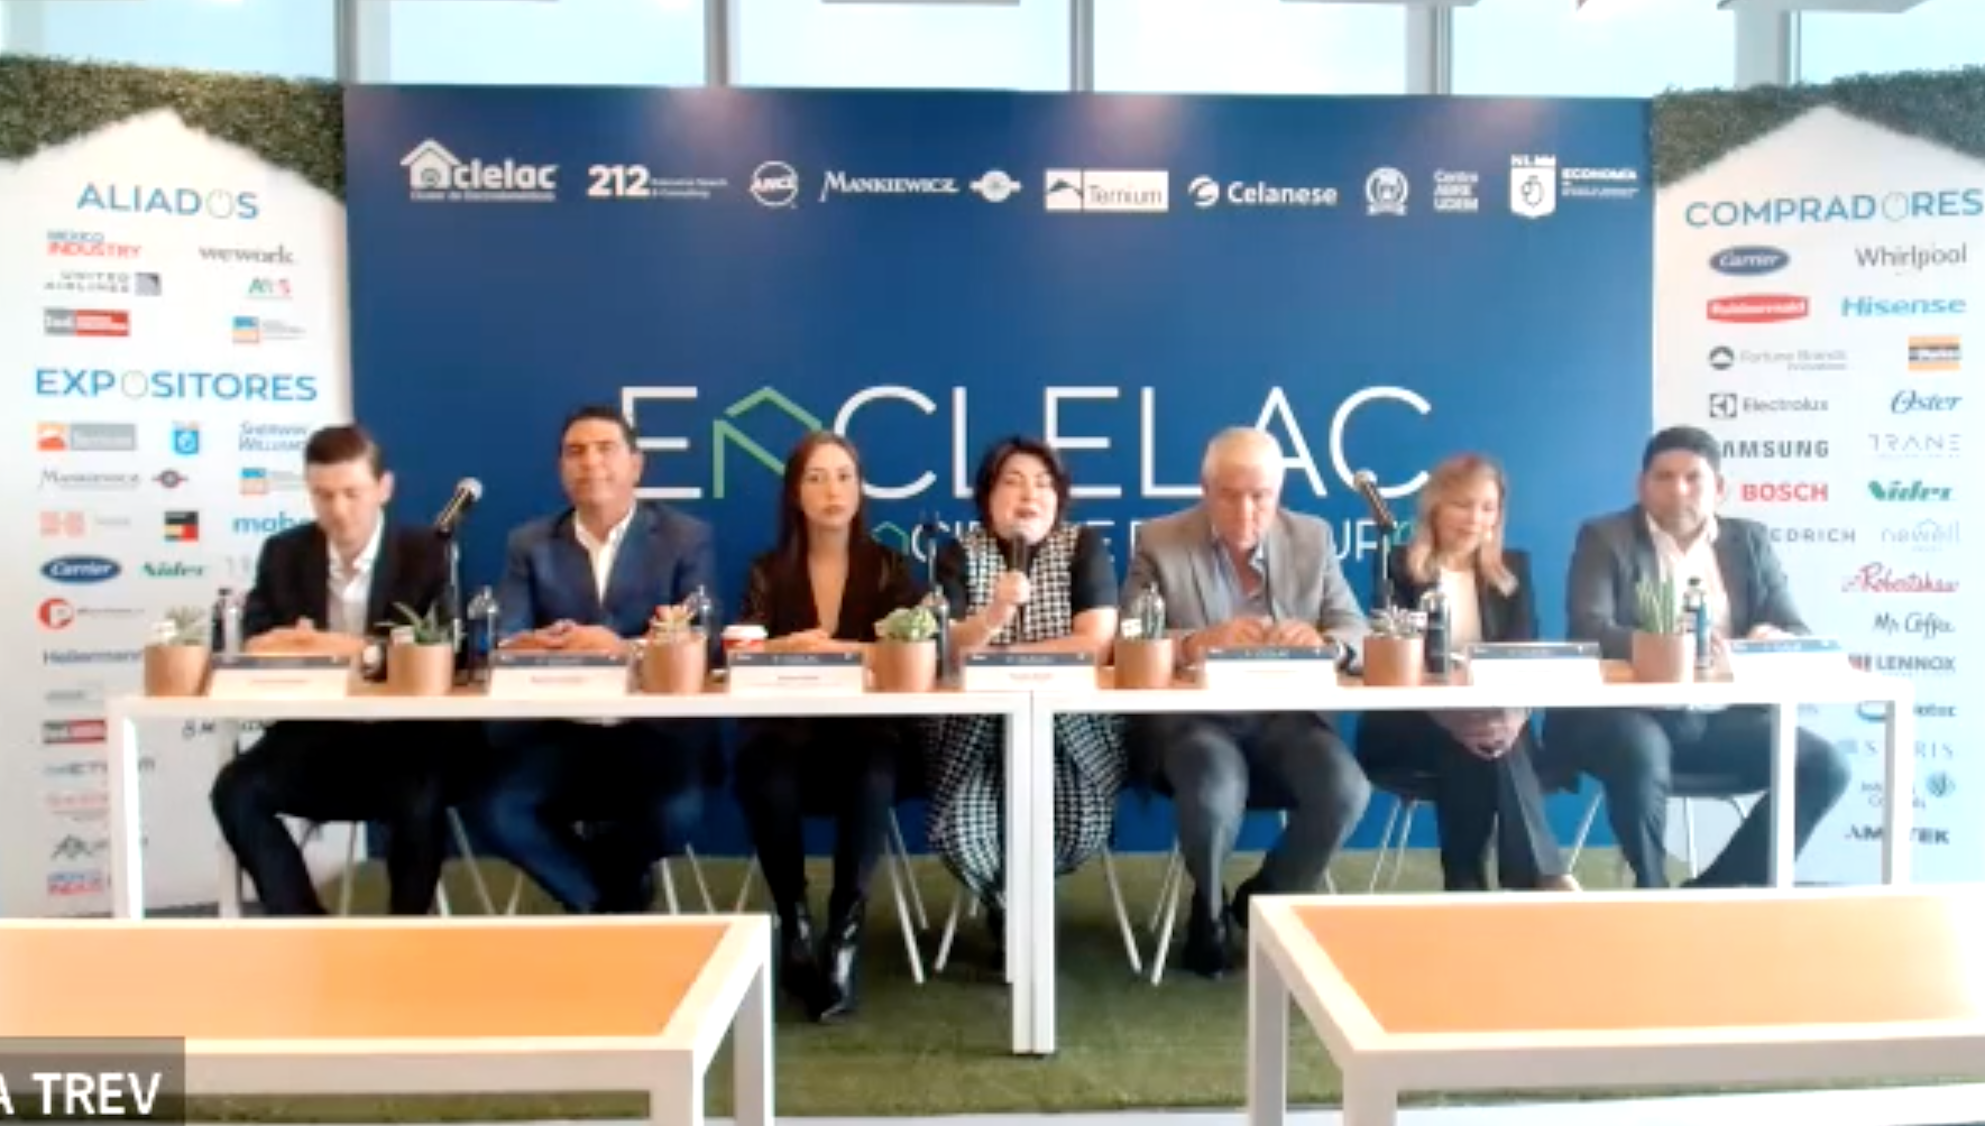 Presentación del Encuentro de Negocios del Clúster de Electrodomésticos (ENCLELAC), que celebrará el 5 de octubre en Nuevo León